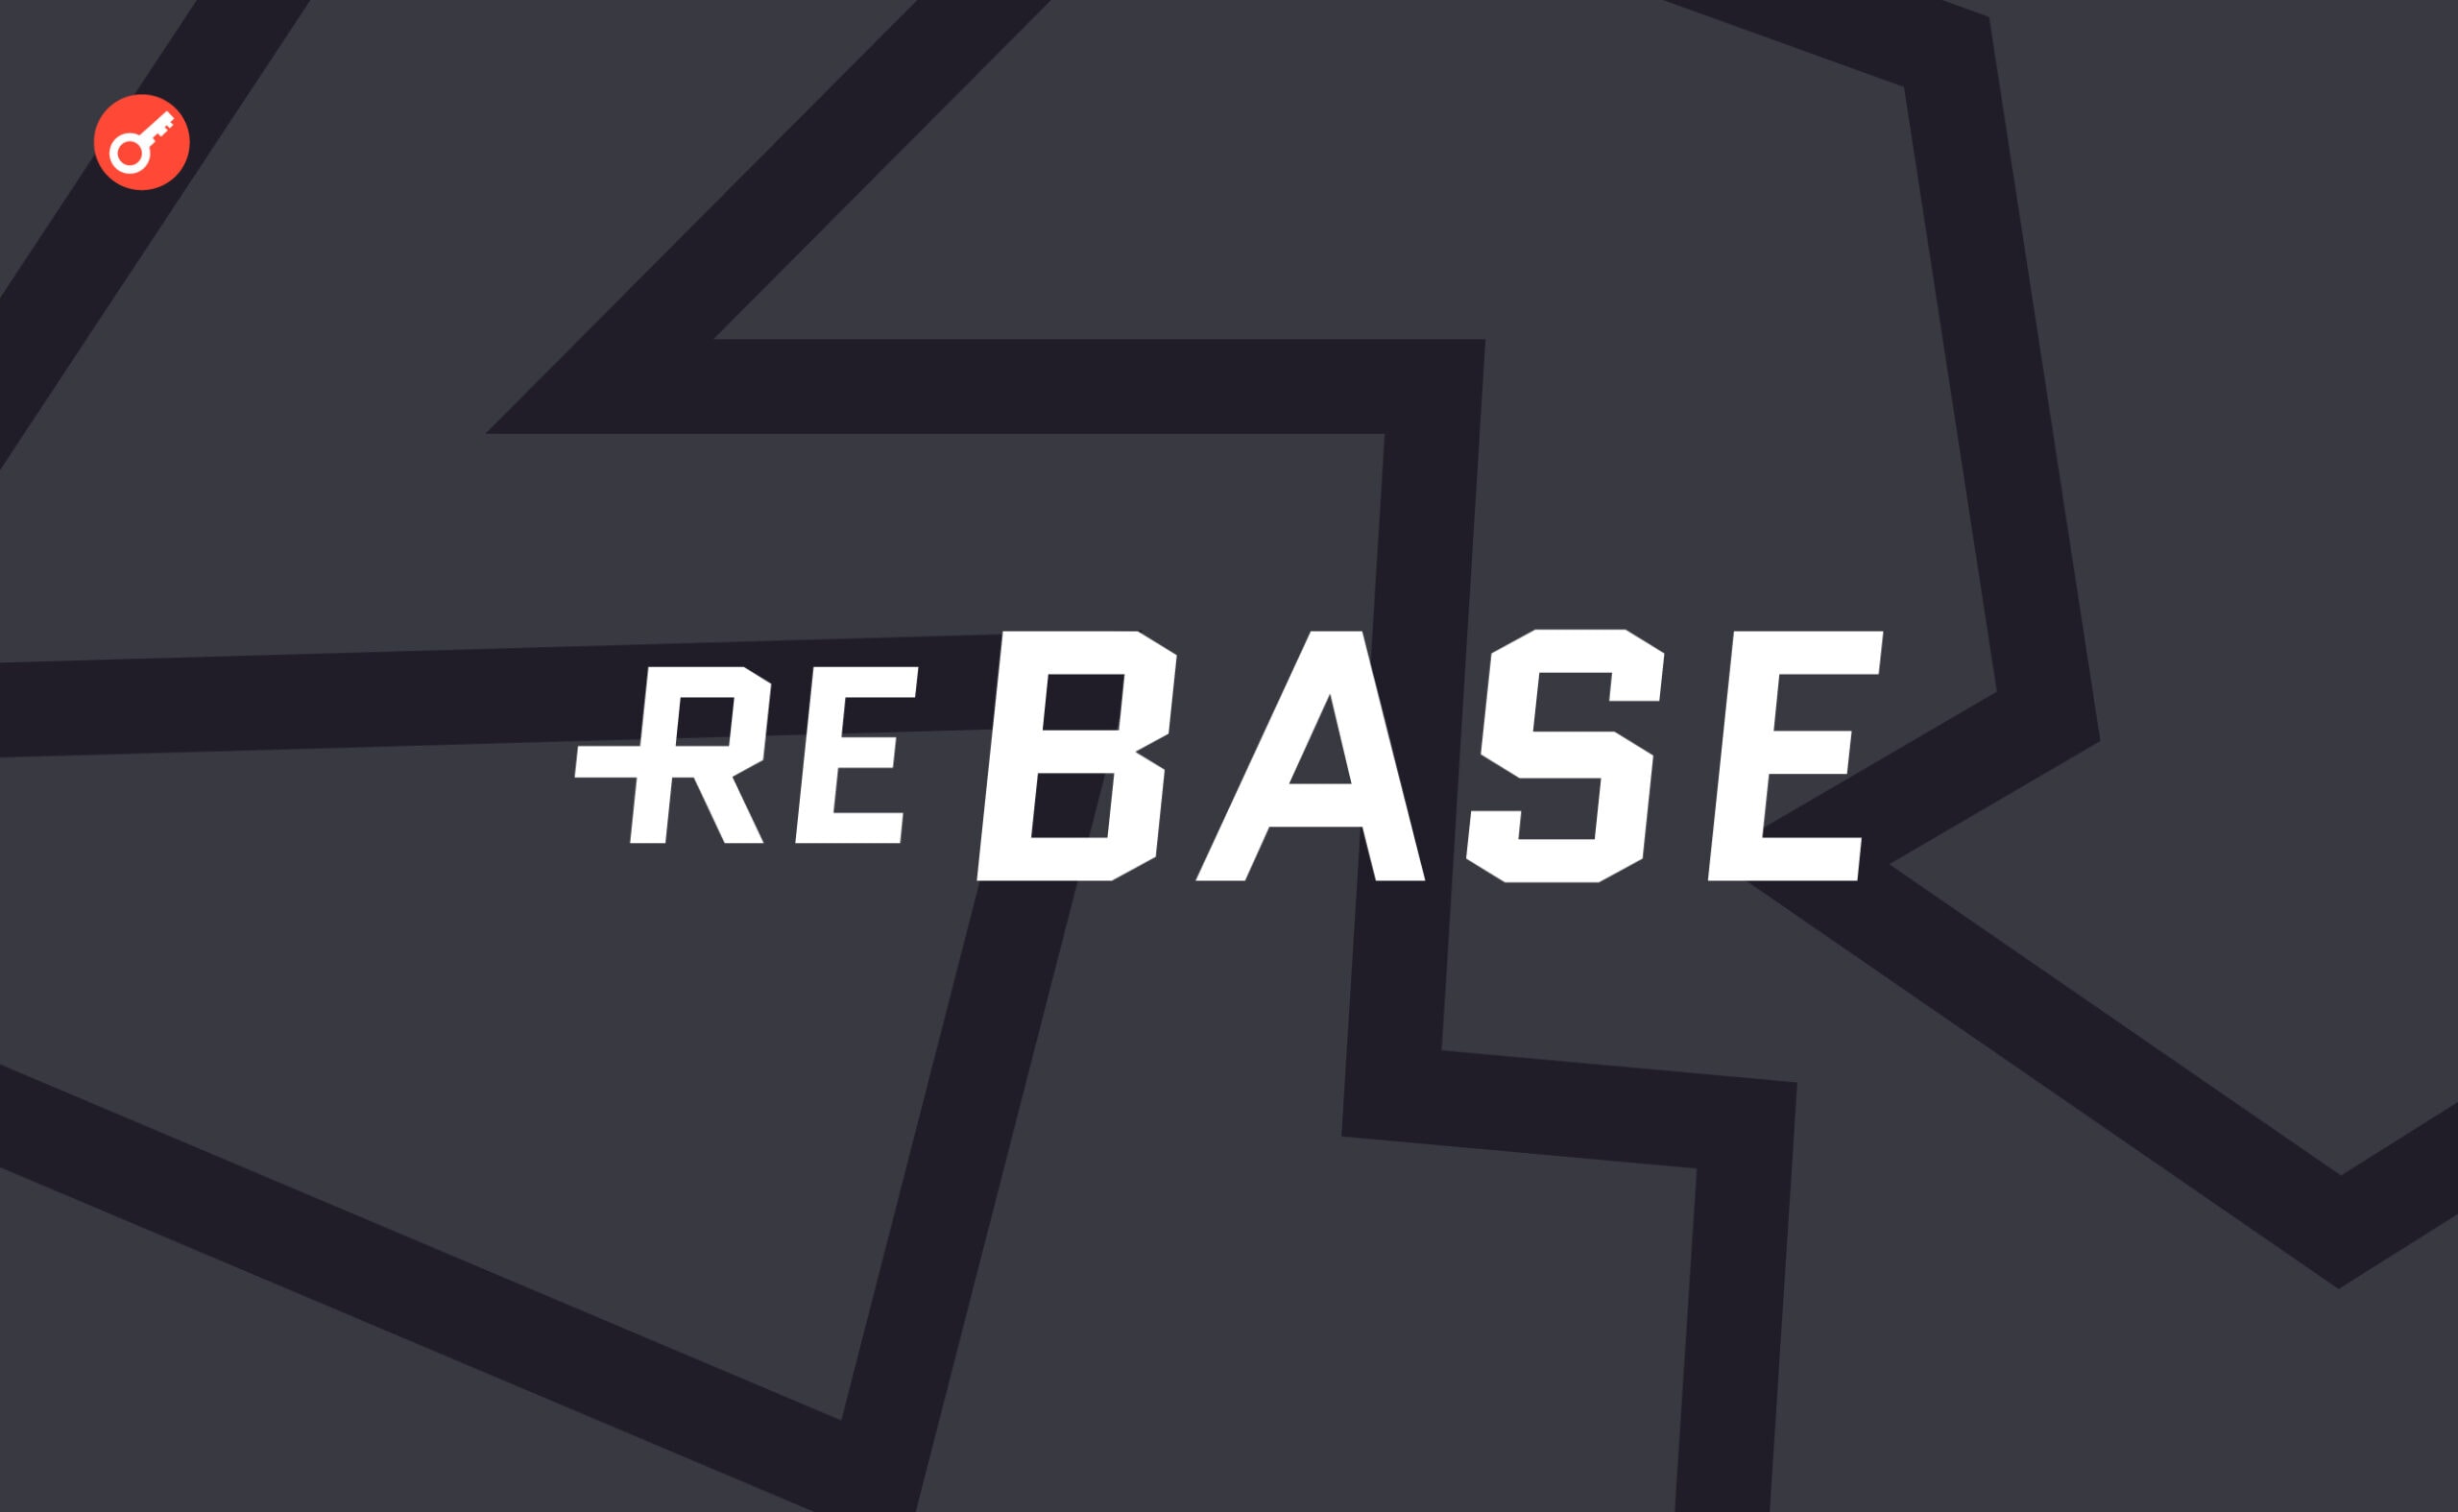 Rebase: накапливаем поинты в IRL Cup. Заглавный коллаж статьи.